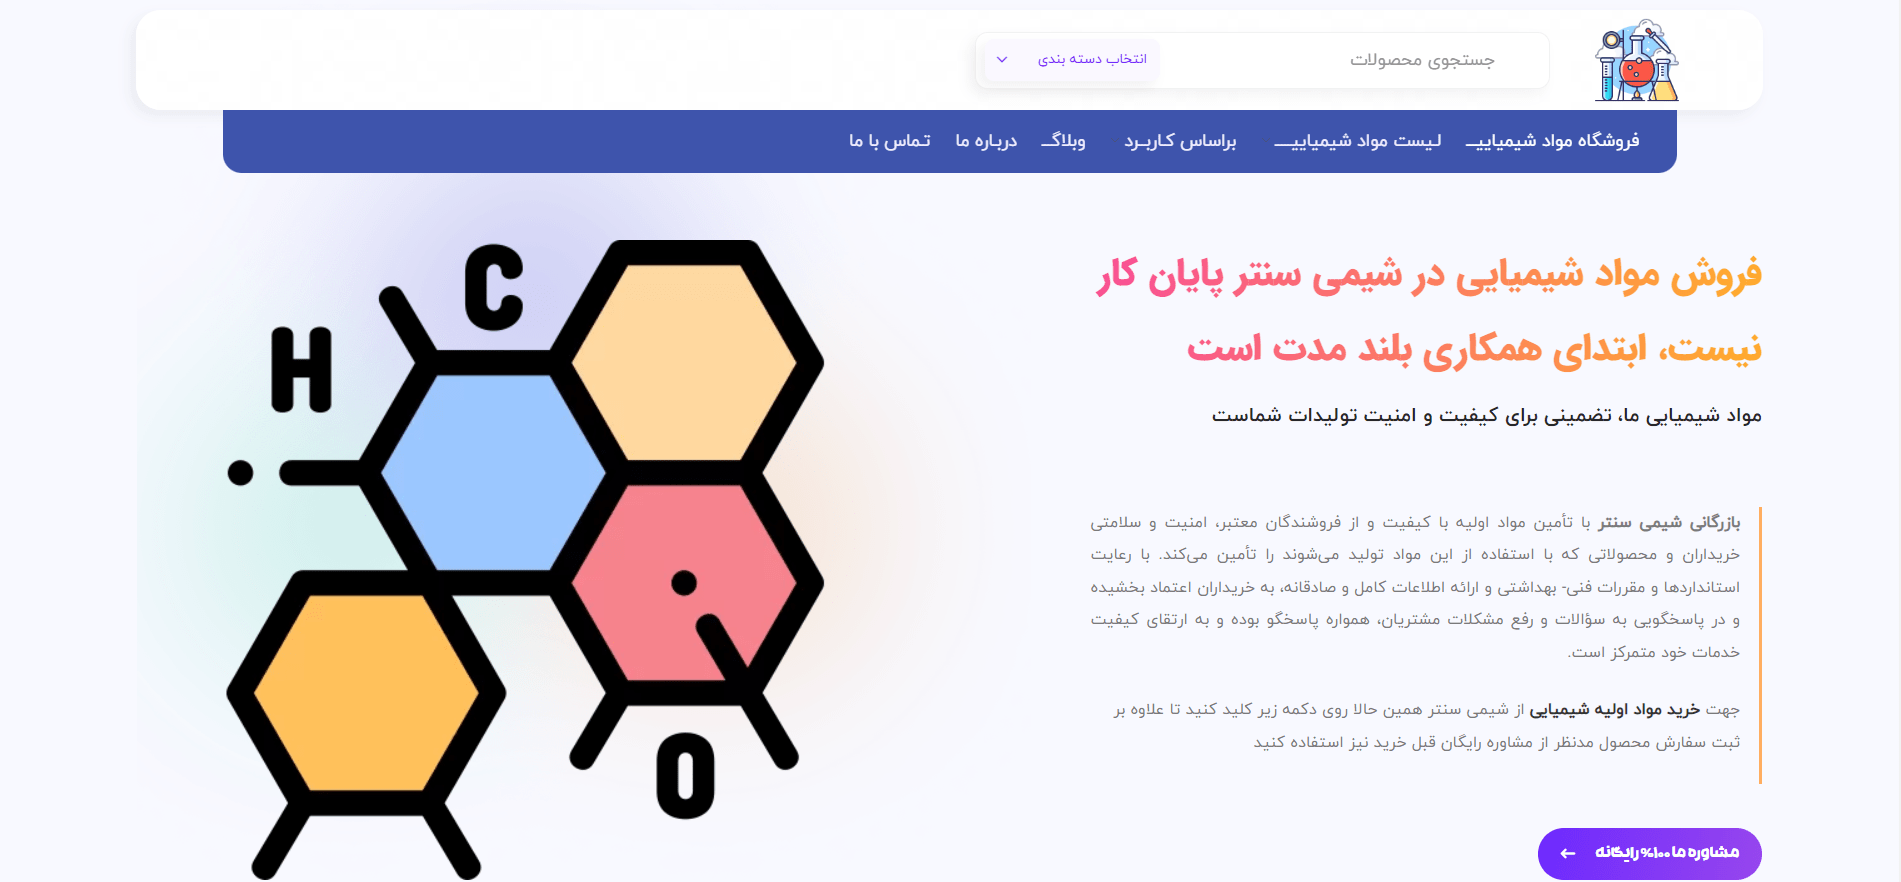 شیمی سنتر فروشنده مواد شیمیایی در ایران